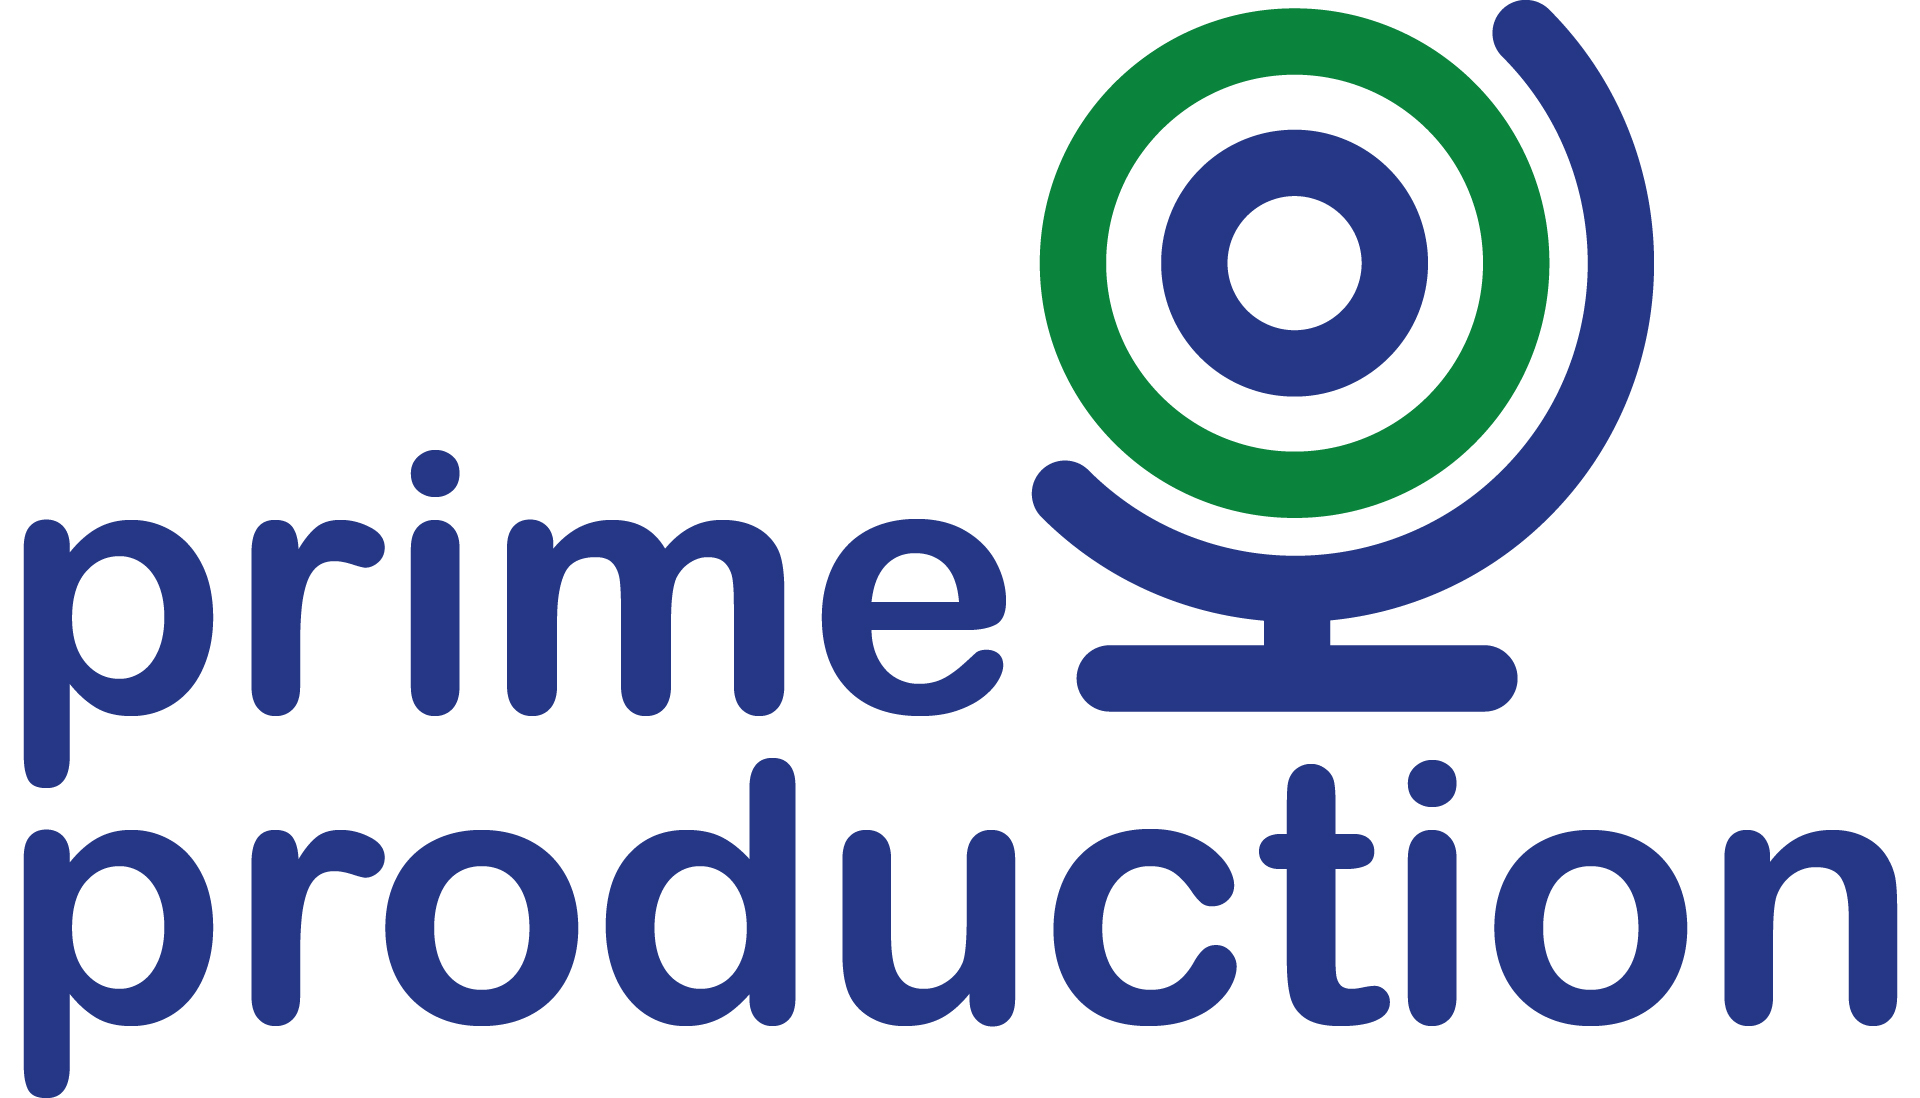 Prime Production